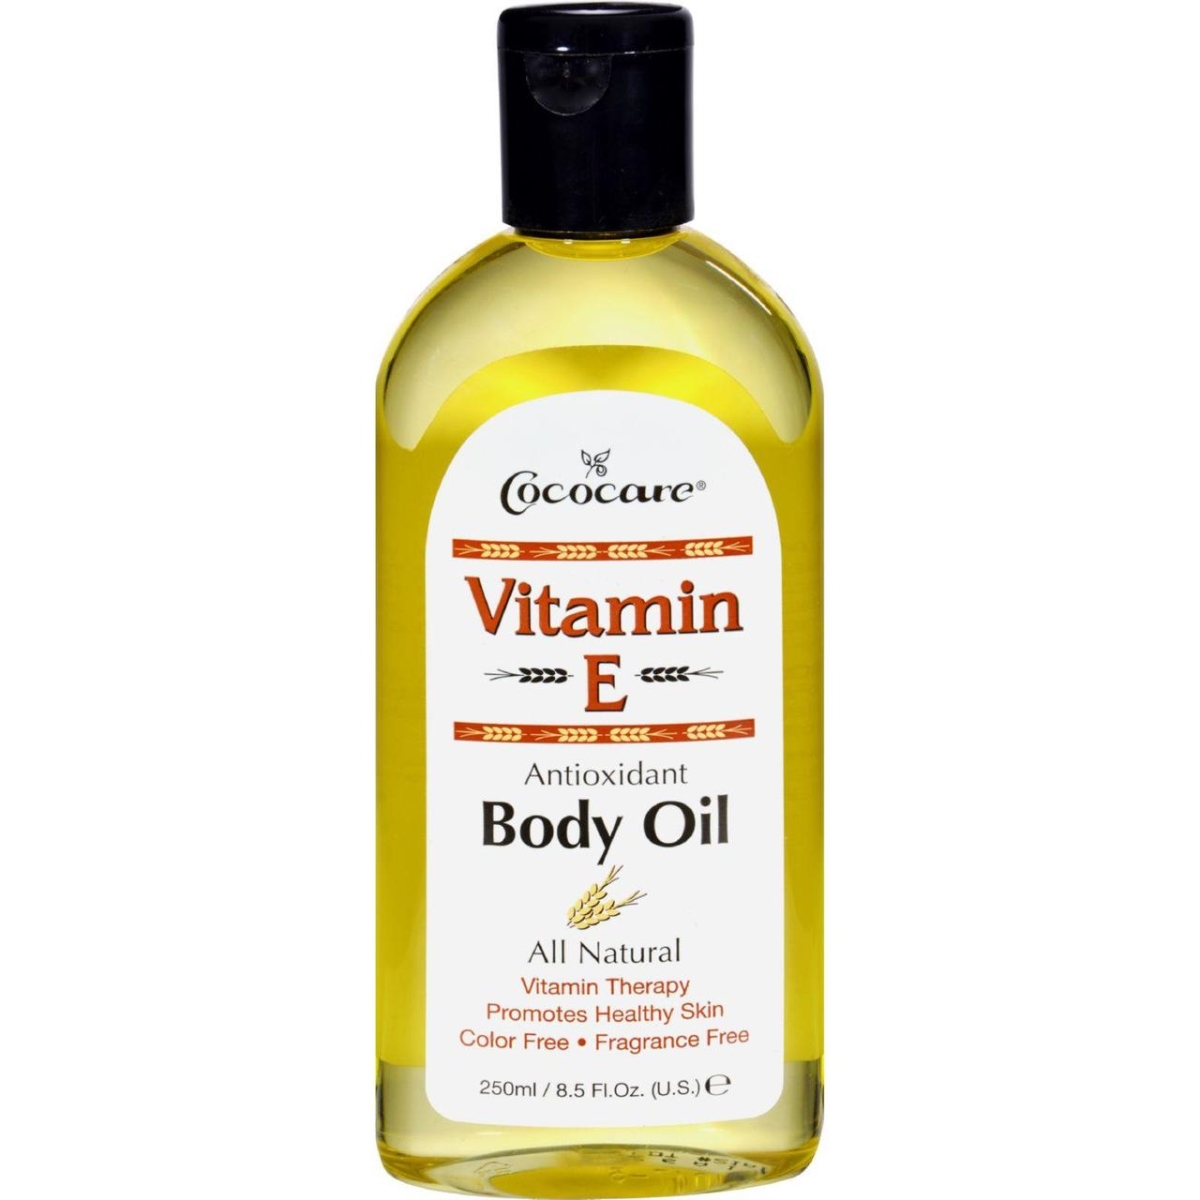 Hg0409334 9 Fl Oz Vitamin E Antioxidant Body Oil